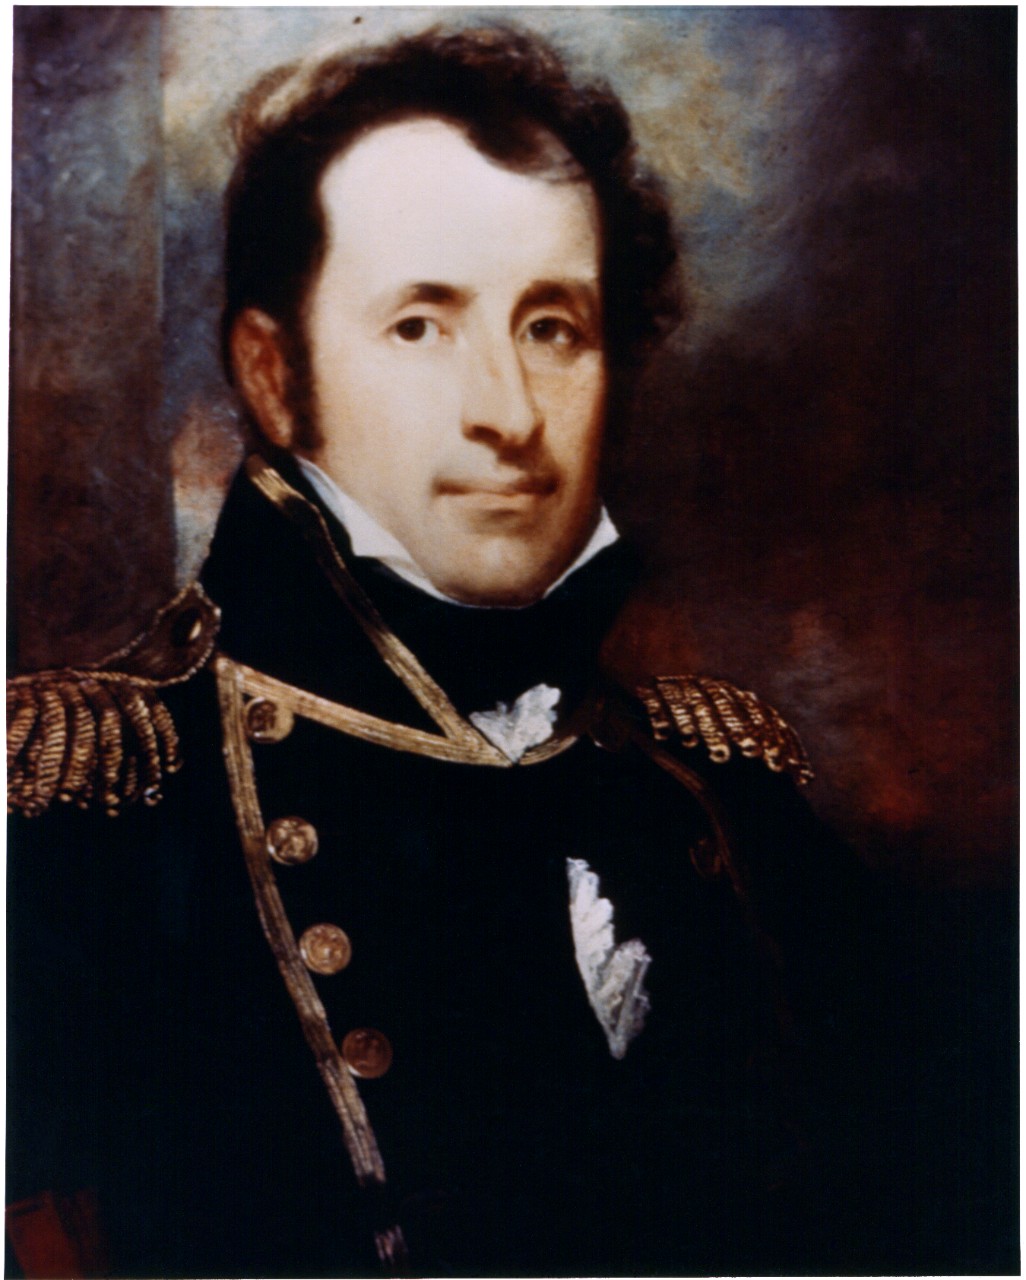 Photo #: KN-2779 Captain Stephen Decatur, USN (1779-1820)  